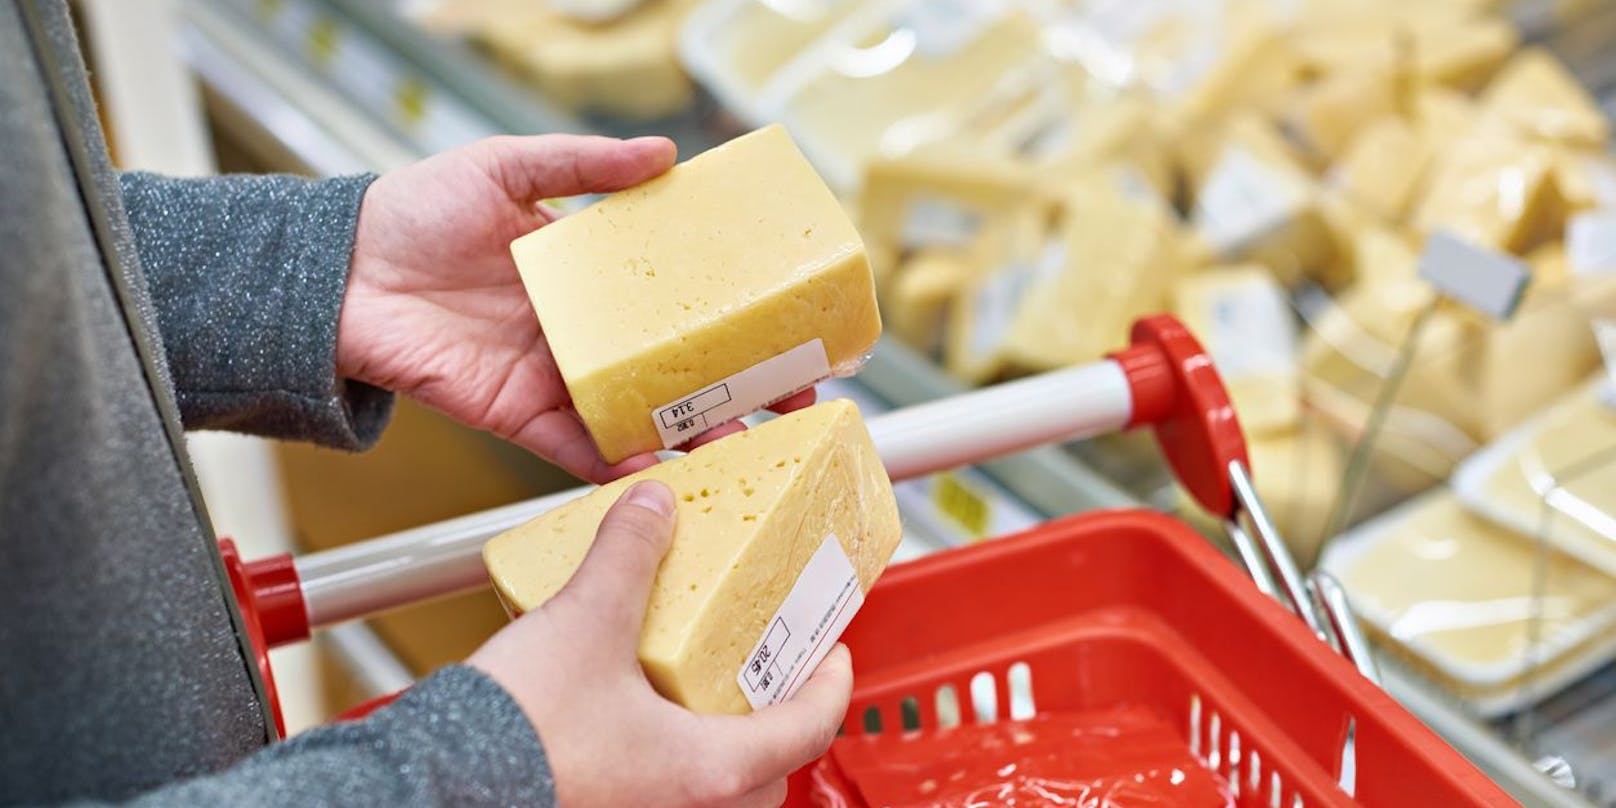 Unter anderem Käse wird bei Penny Deutschland empfindlich teurer. (Symbolbild)